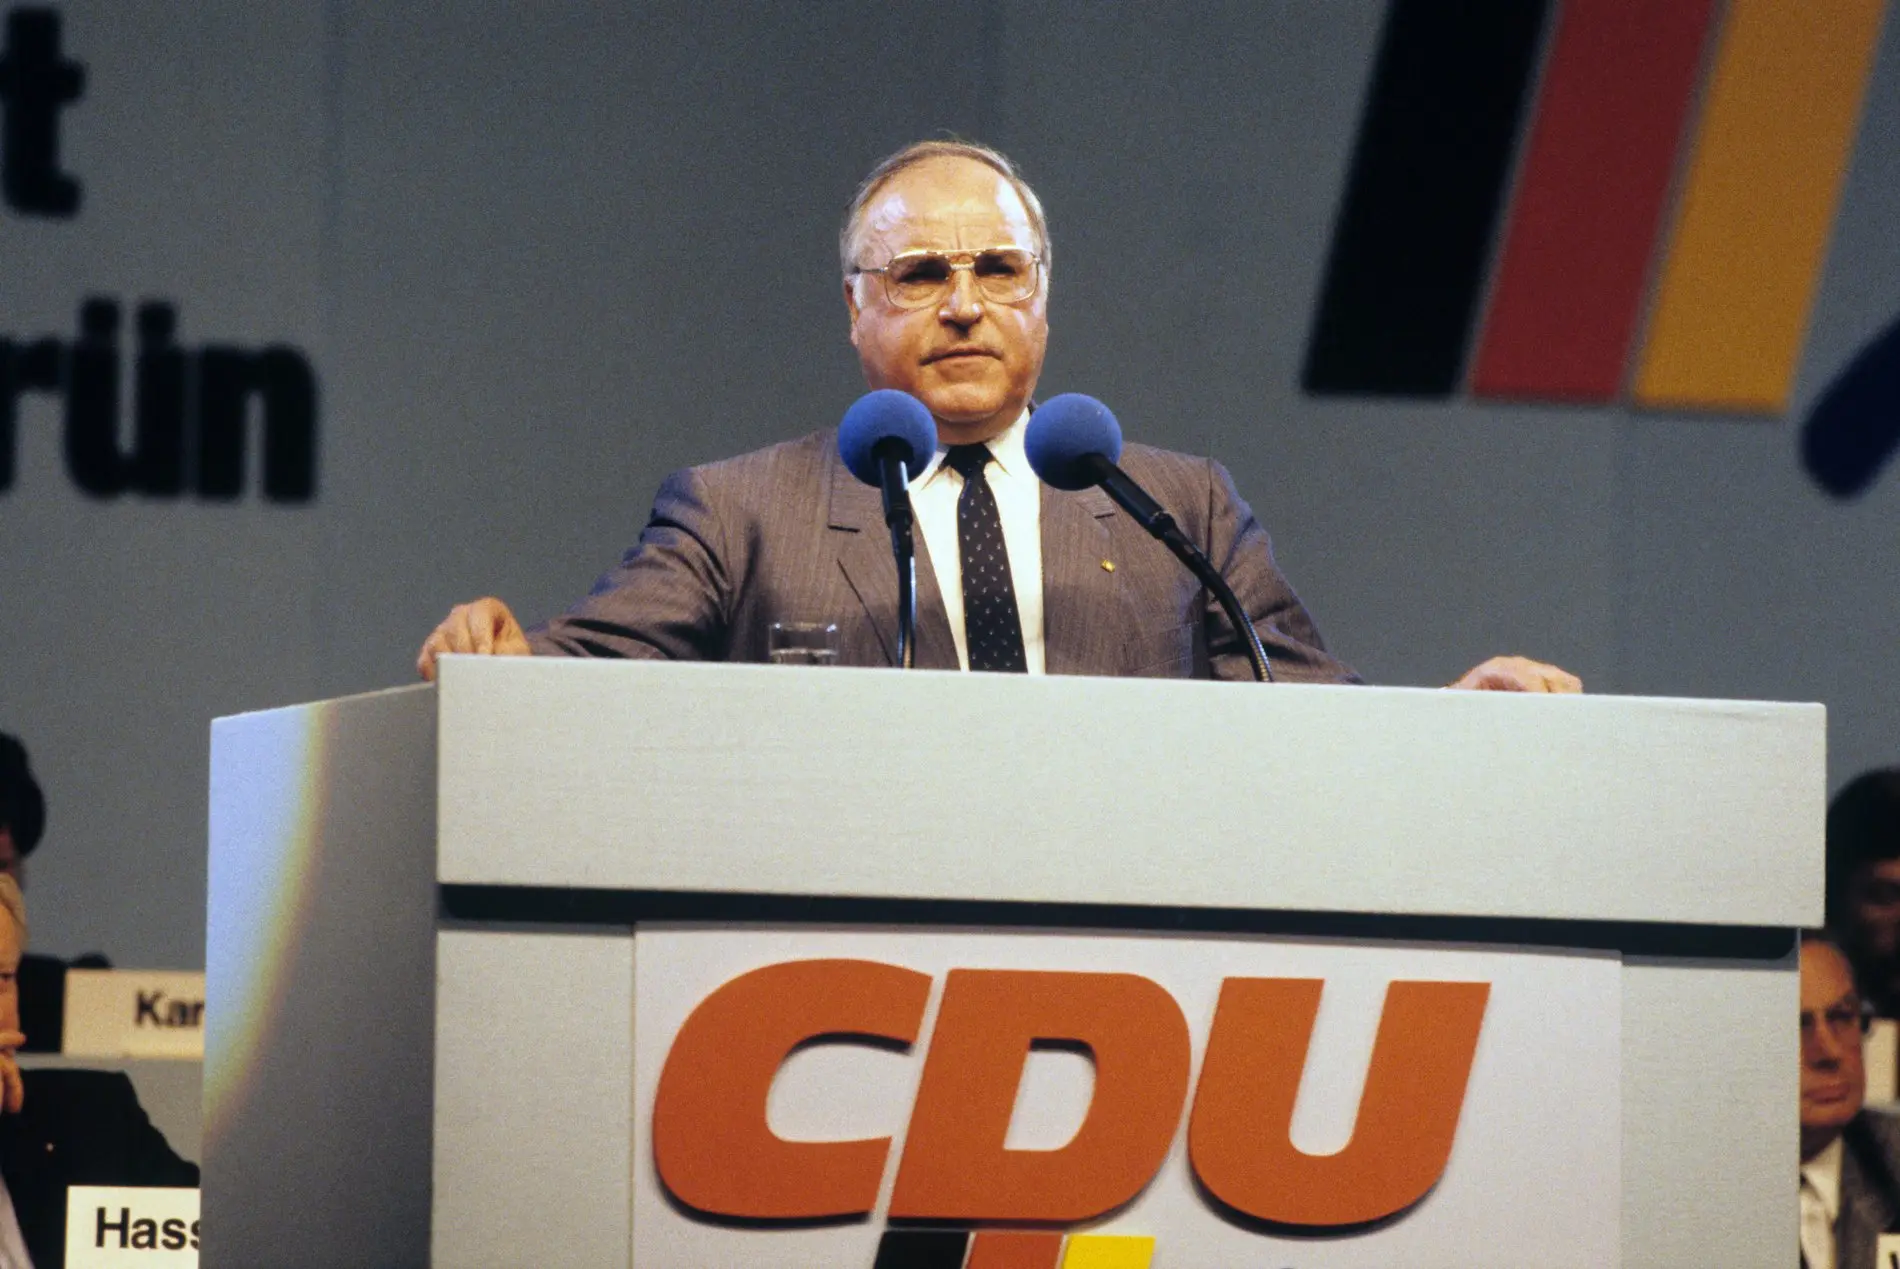 Ehemaliger Bundeskanzler Helmut Kohl am Rednerpult, CDU Schriftzug.